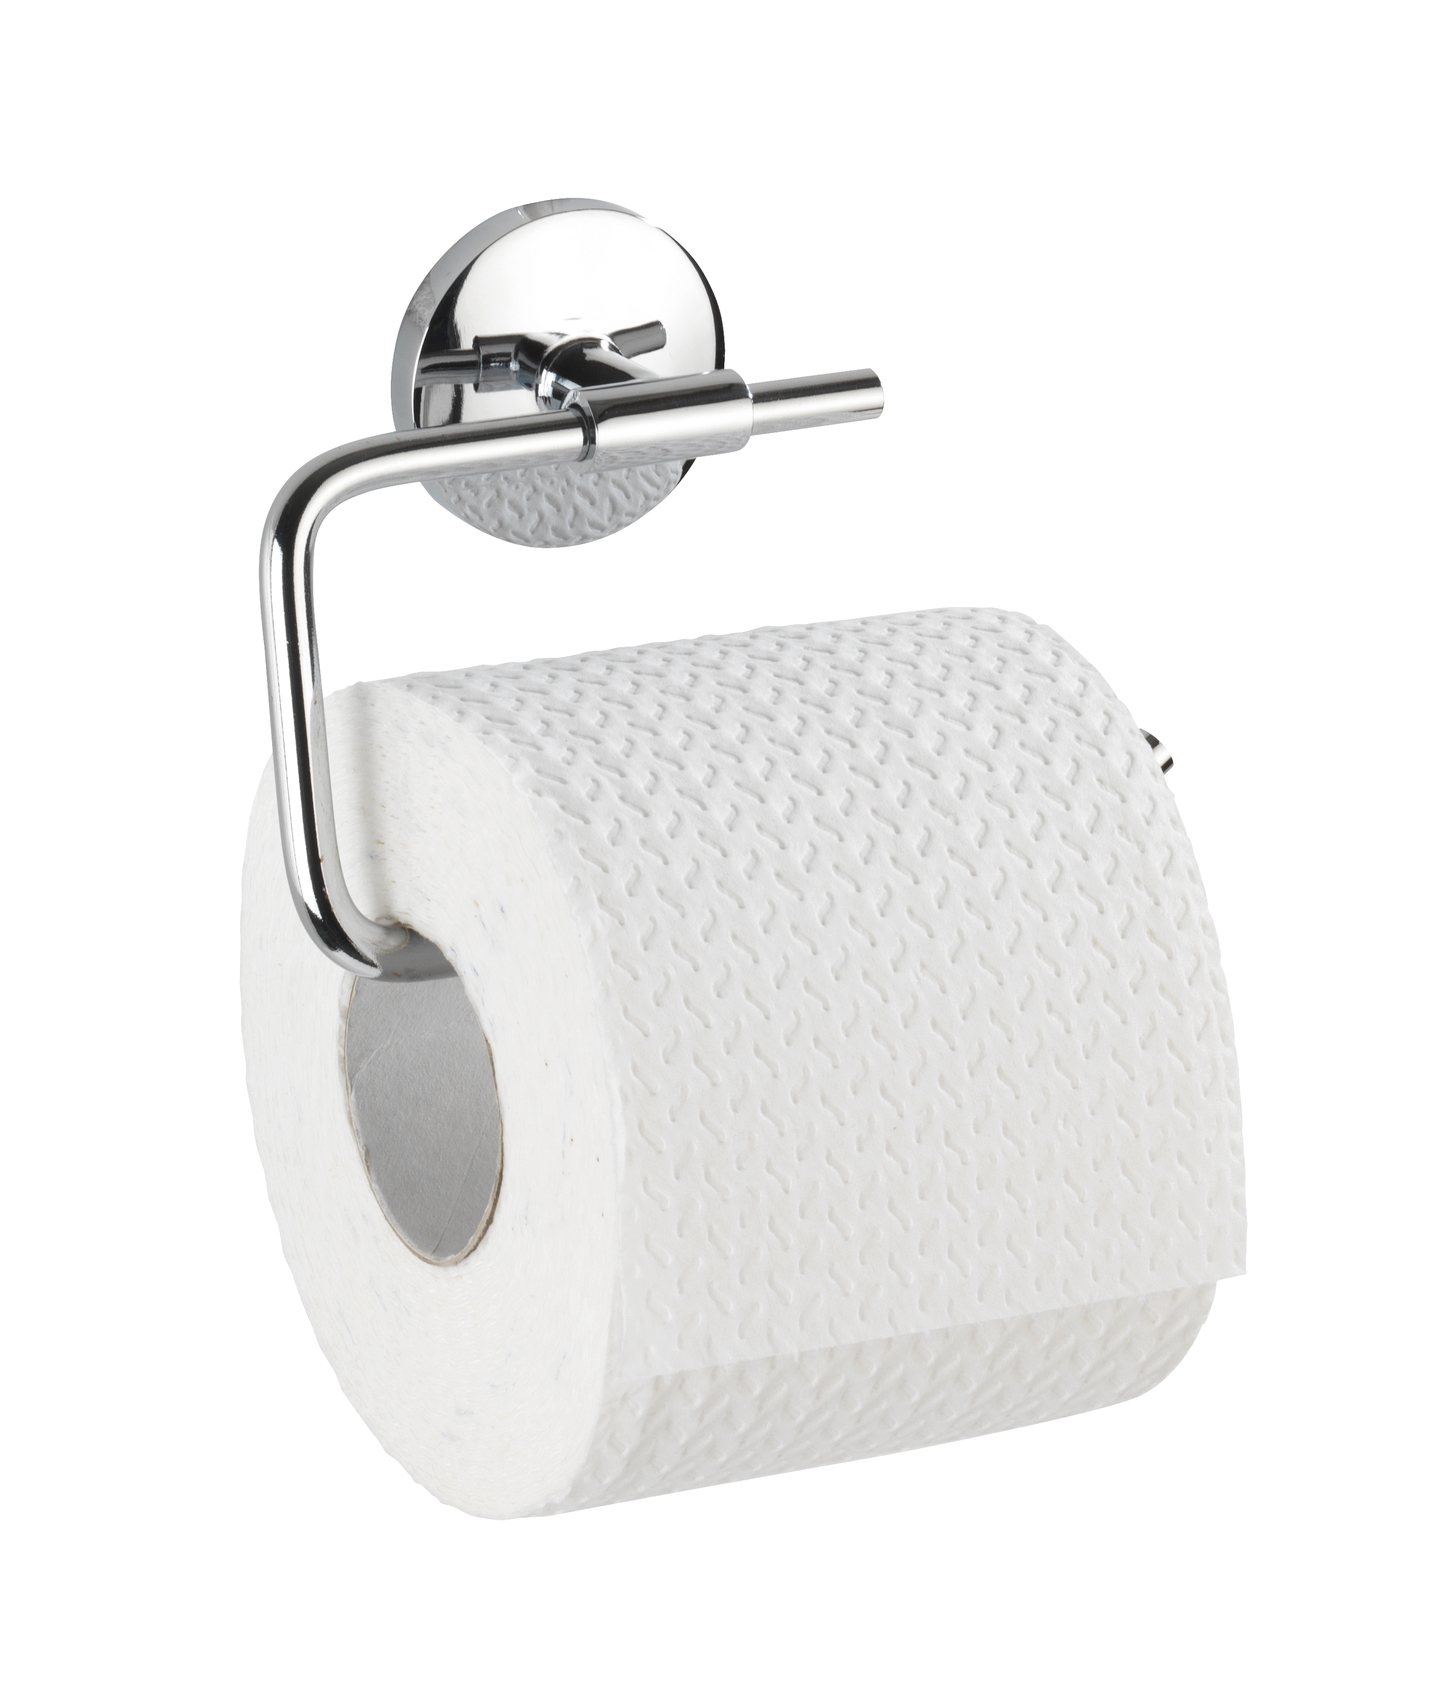 Wenko Toilettenpapierhalter Cuba 13,5 x 9,5 x 4 cm, ohne Deckel, silber glänzend